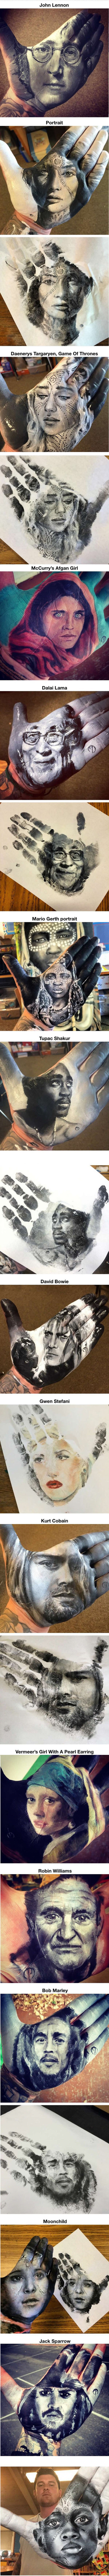 Ovaj učitelj crta nevjerojatno realne portrete na vlastitom dlanu